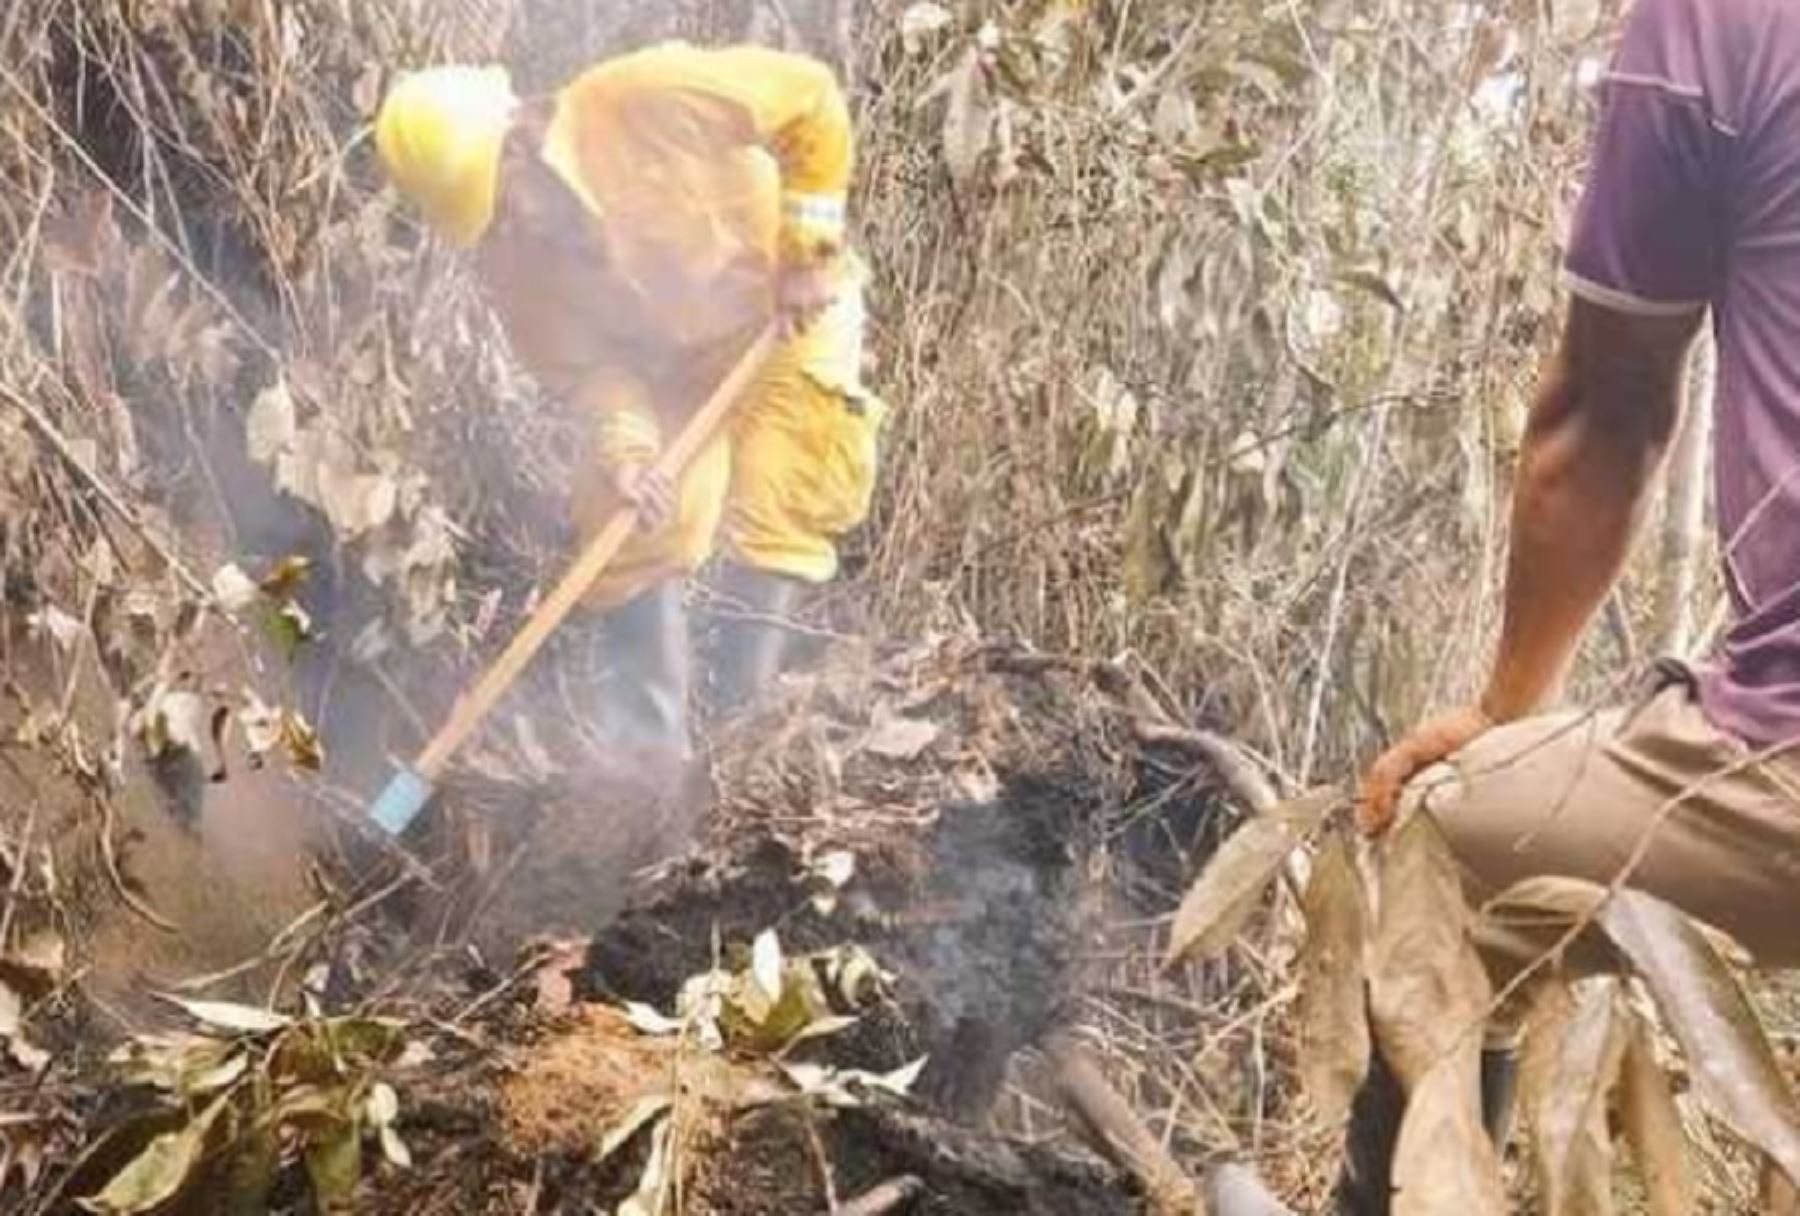 Guardaparques bomberos forestales del Servicio Nacional de Áreas Naturales Protegidas por el Estado (Sernanp), organismo adscrito al Ministerio del Ambiente, atienden incendio forestal registrado en el ámbito de la comunidad nativa Kichwa de Callanayacu, en el distrito de Chazuta, departamento de San Martín.